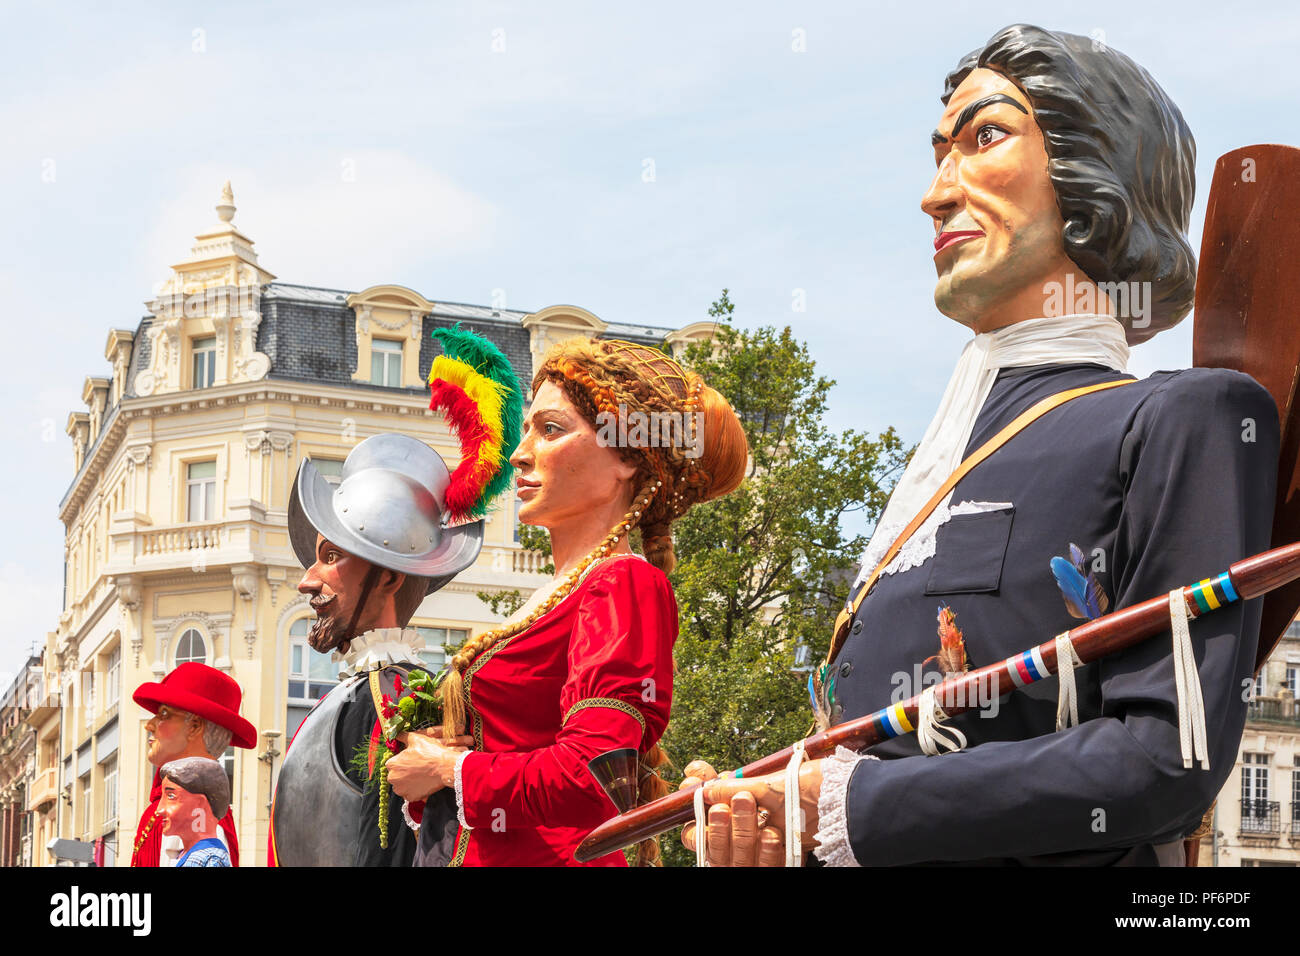 Le défilé des géants, les fêtes de Gayant, un festival annuel célébrant le géant comme le symbole de Douai lorsque de grands mannequins représentant le Gayant Banque D'Images